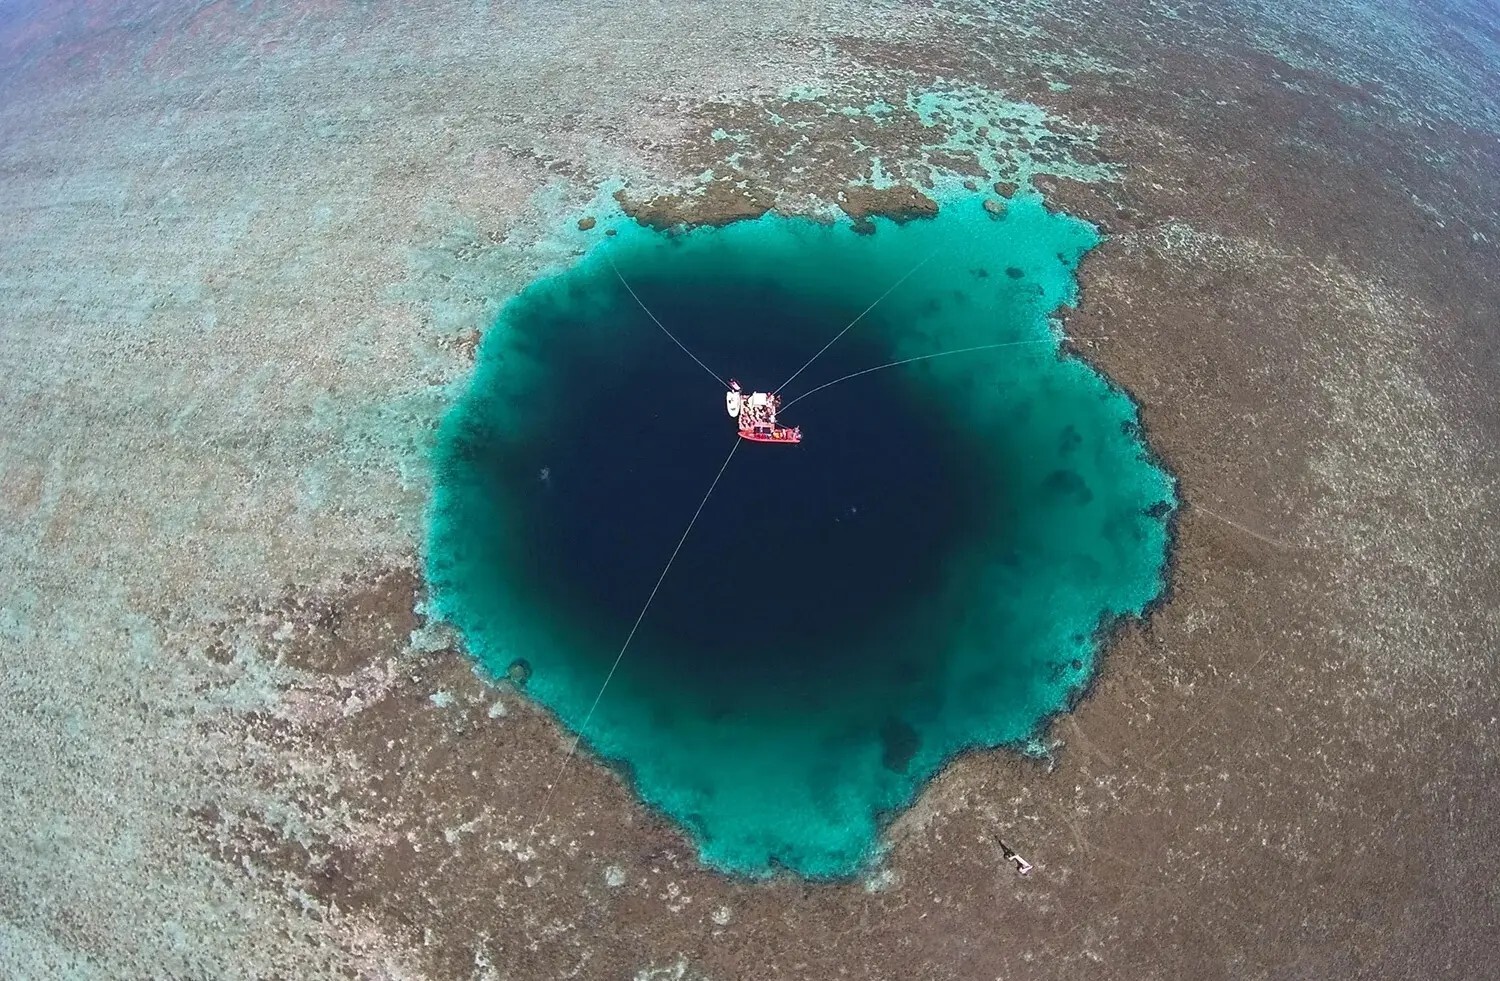 يحتوي على كهوف وأنفاق مرعبة.. اكتشاف أعمق ثقب أزرق تحت الماء في العالم (فيديو+ صور)